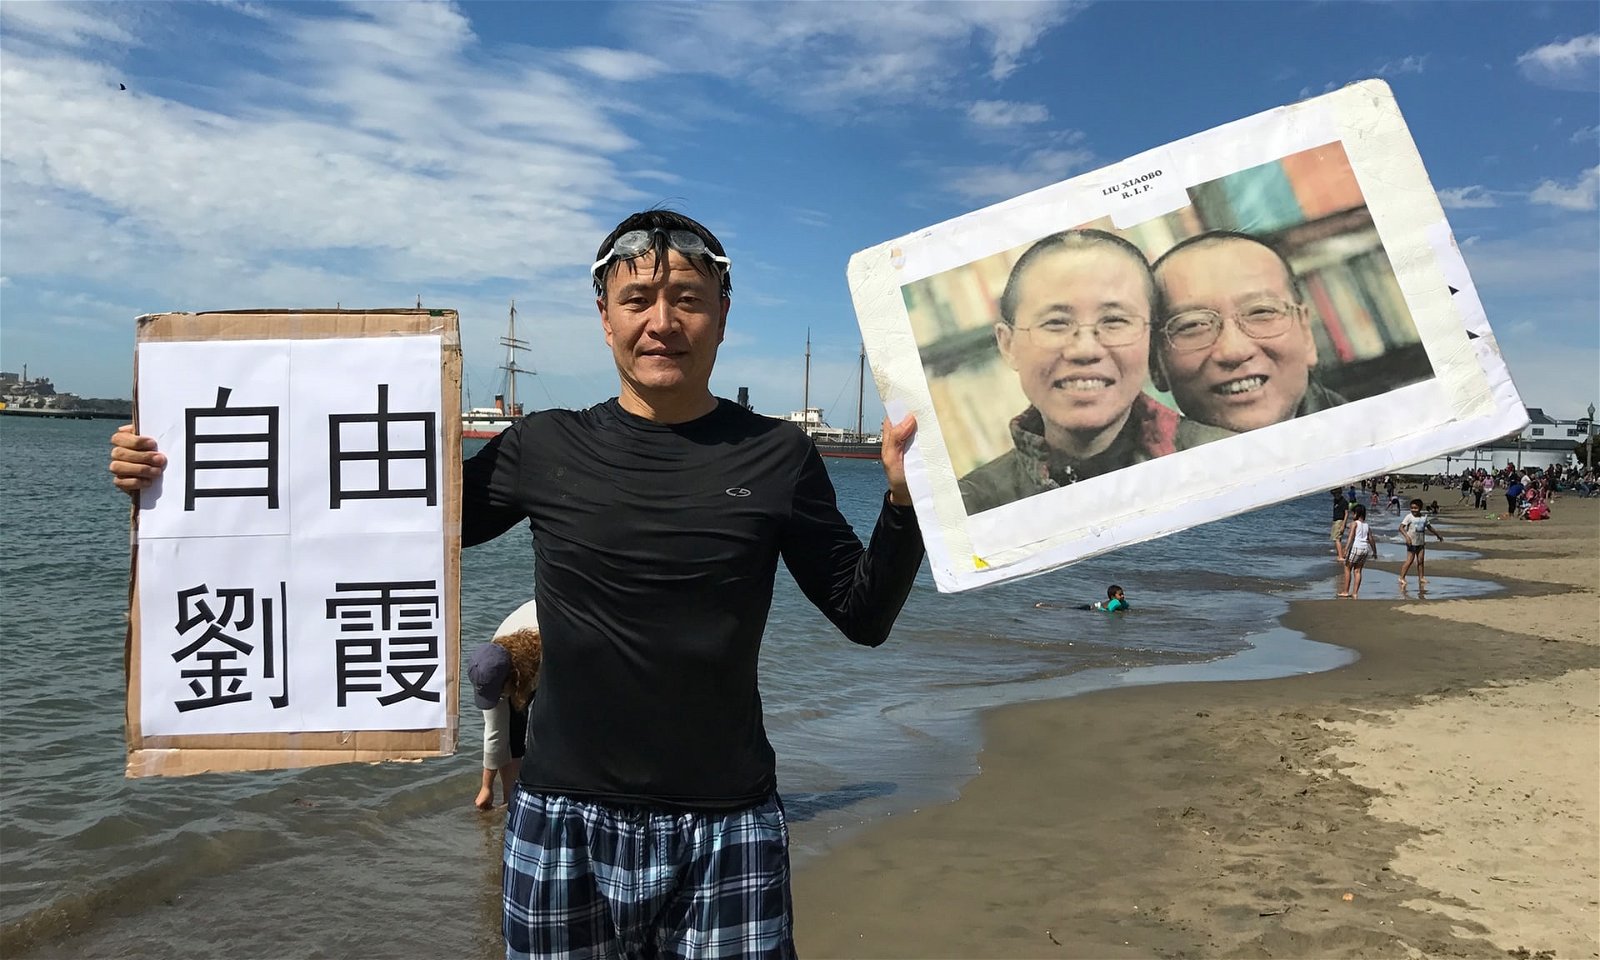 八九民运学生领袖之一、“人道中国”创办人周锋锁上传至推特照片显示，他在美国西岸海边为刘晓波送行，并声援刘霞。